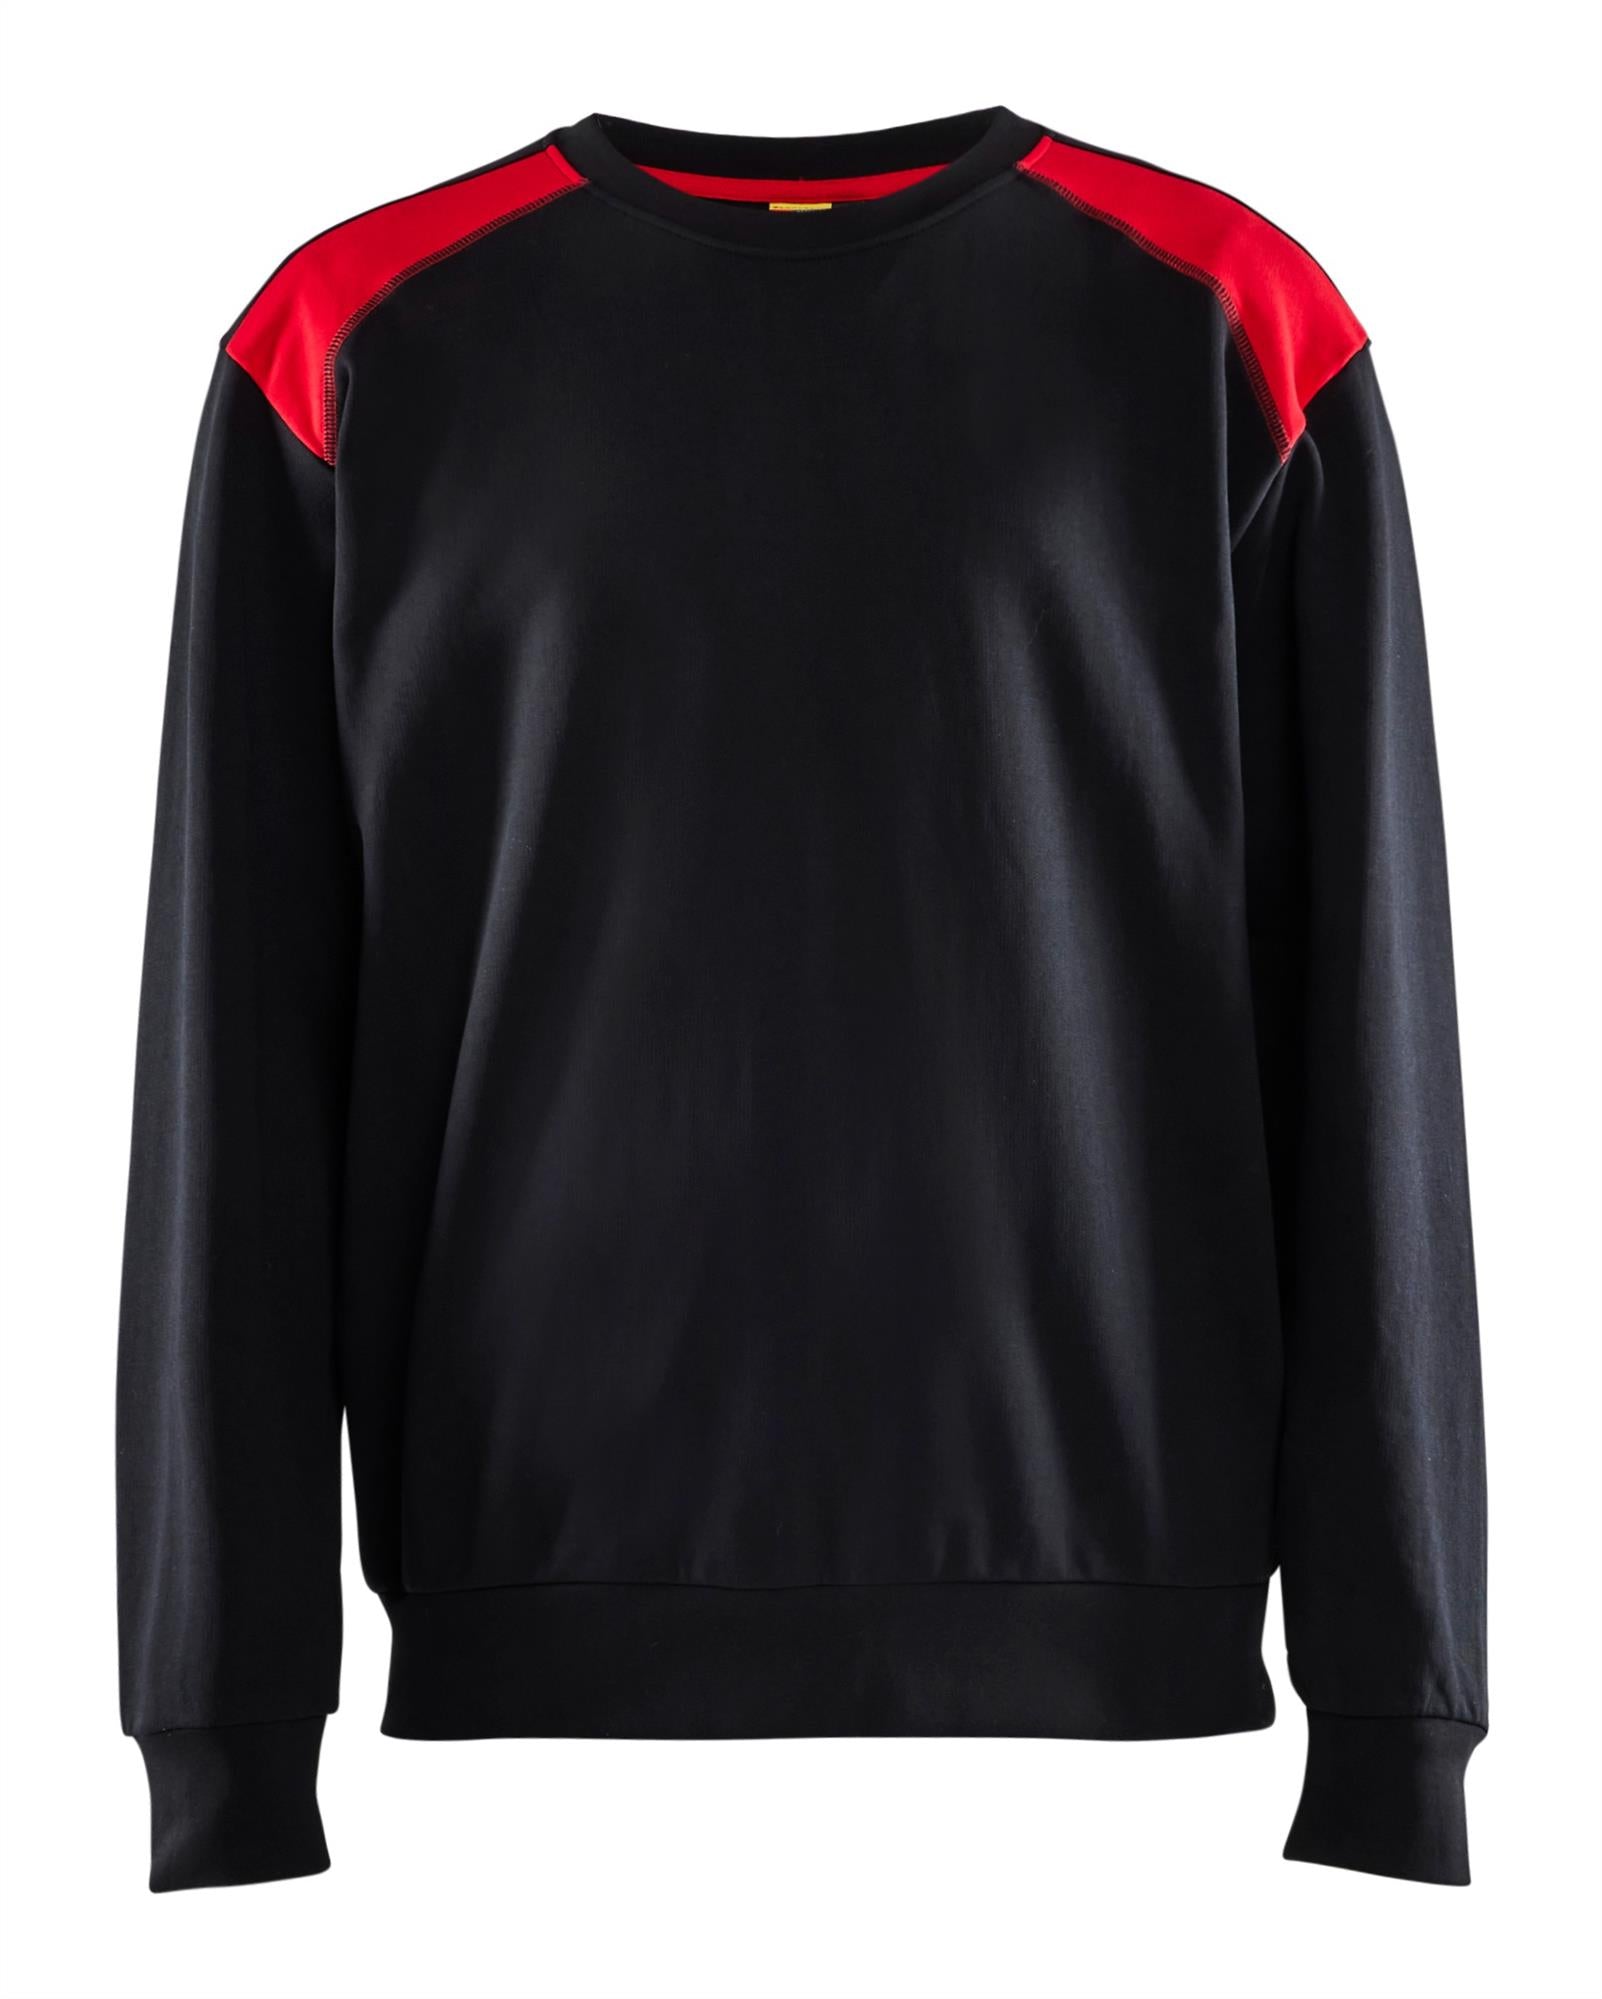 Blaklader black/red men's cotton sweatshirt #3580